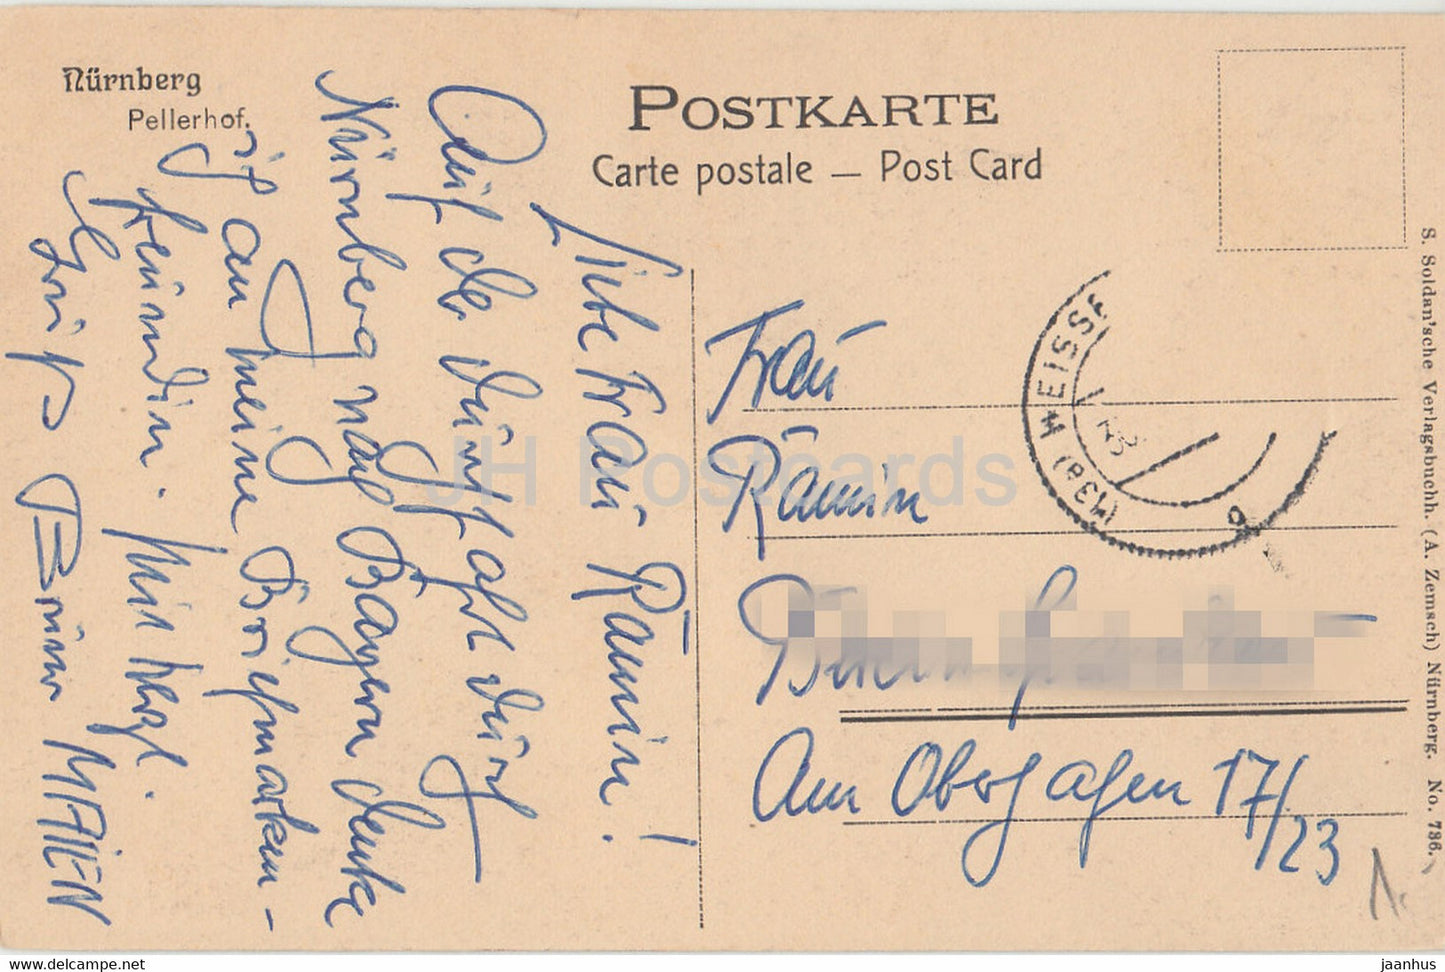 Nurnberg - Pellerhof - old postcard - Germany - used